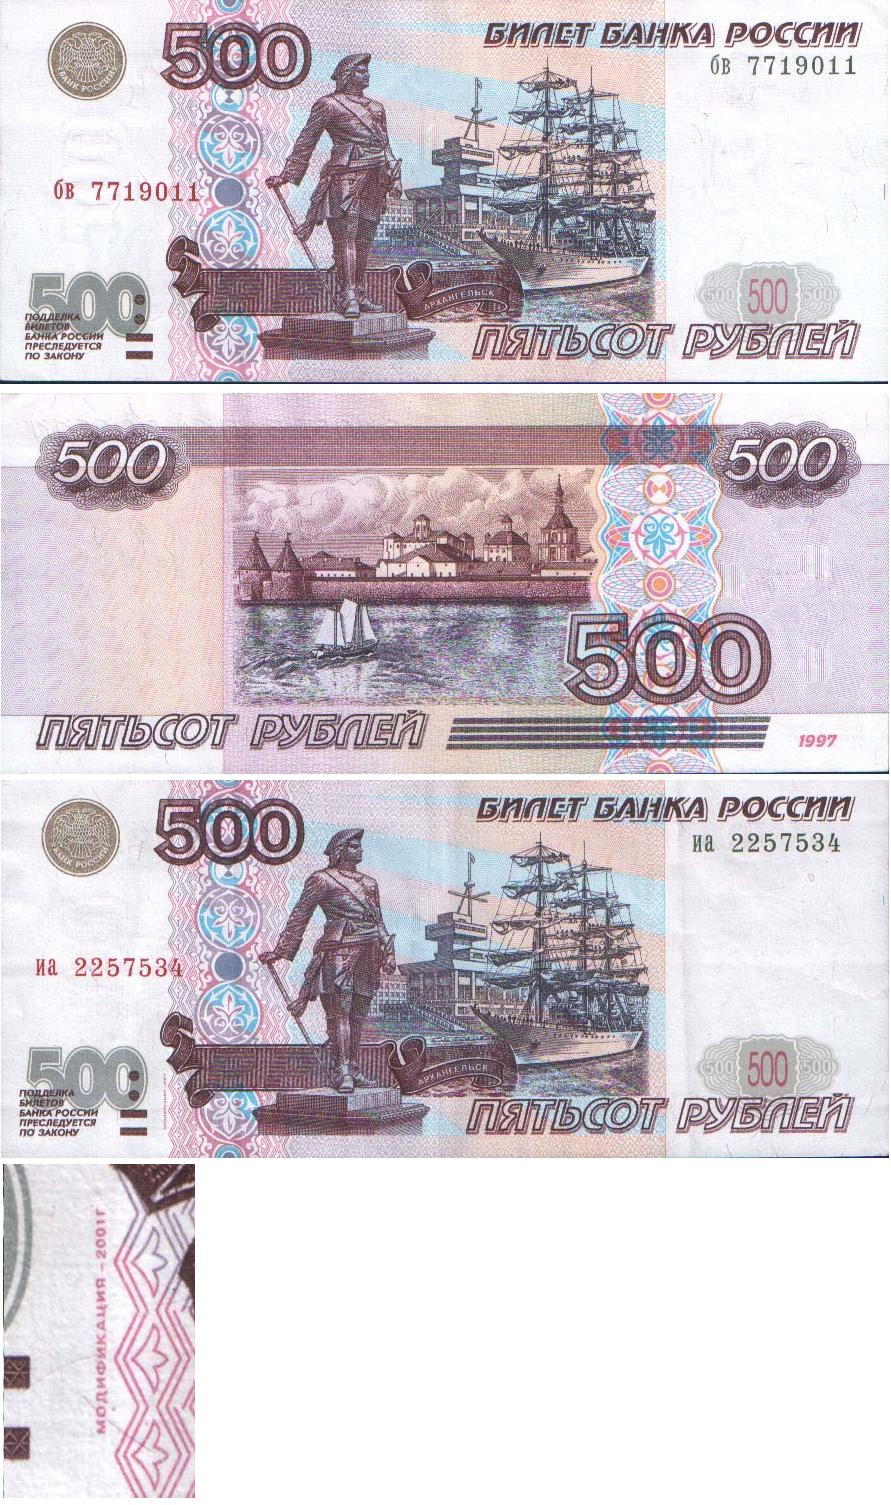 300 рублей прописью. 500 Рублей. Напечатать 500 рублей. 500 Рублей на телефон. Как выглядят новые 500 рублей.